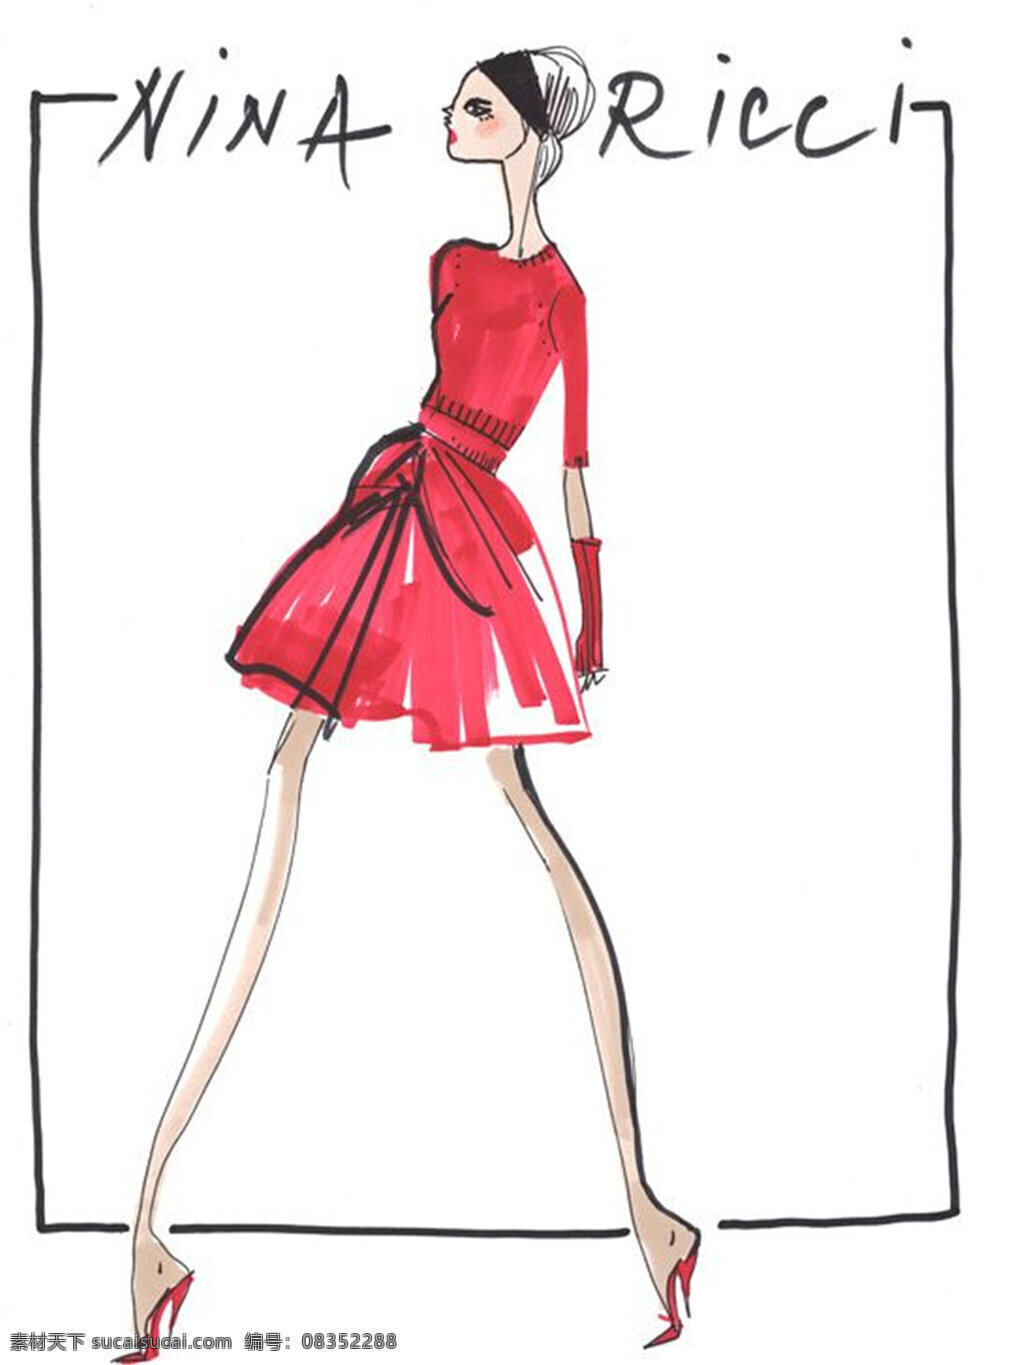 红色 连衣裙 设计图 服装设计 时尚女装 职业女装 职业装 女装设计 效果图 短裙 衬衫 服装 服装效果图